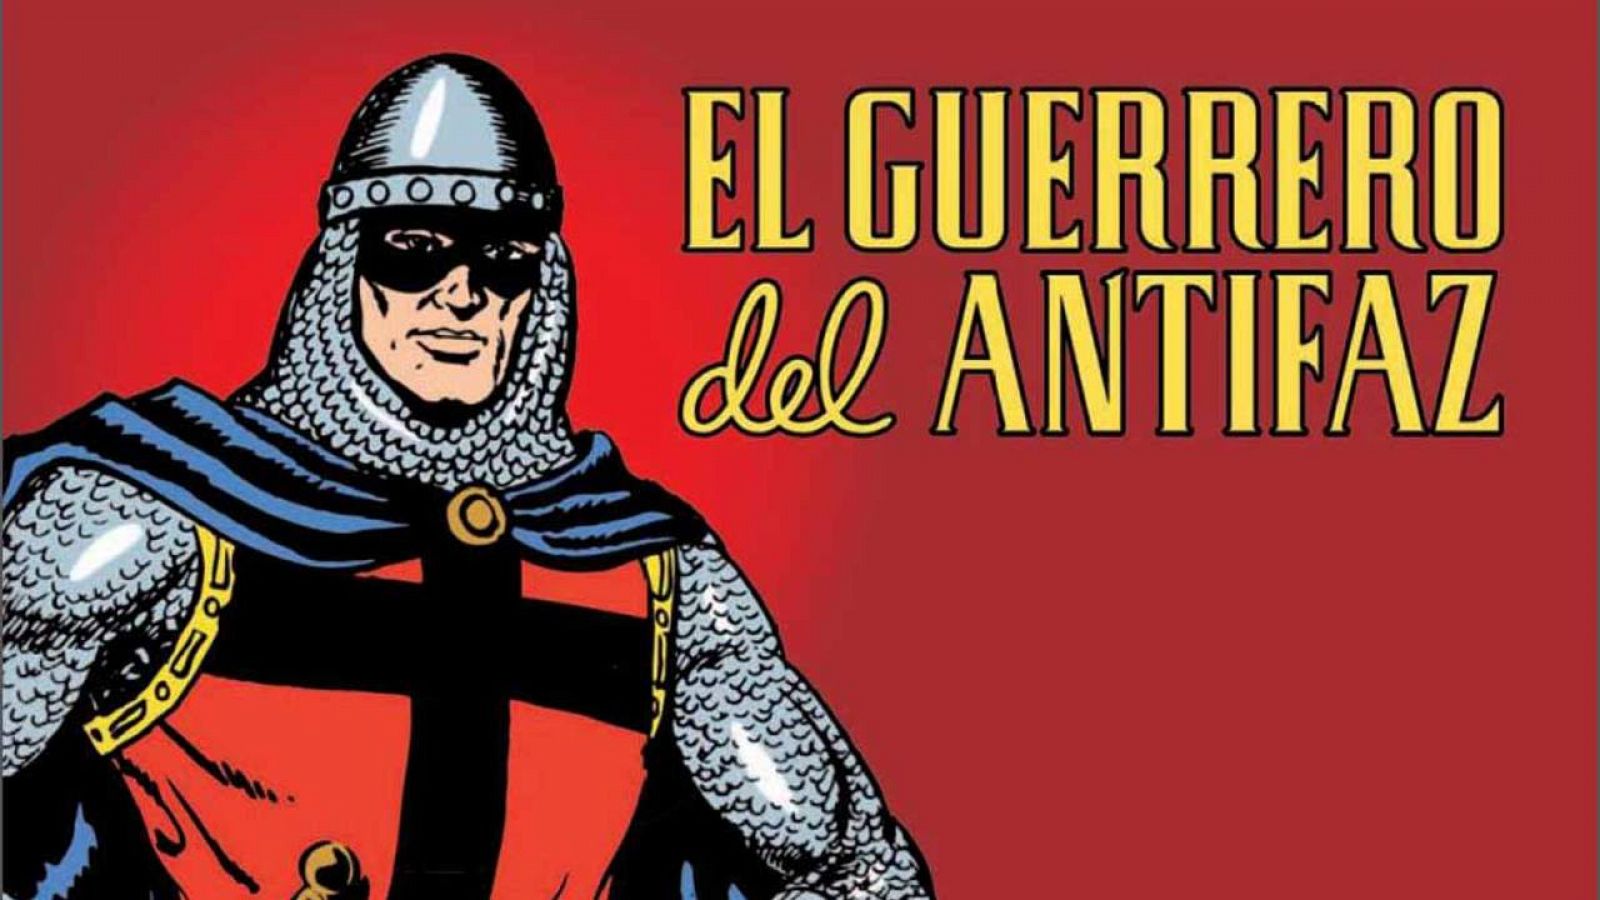 El Guerrero del Antifaz es uno de los mitos del cómic español